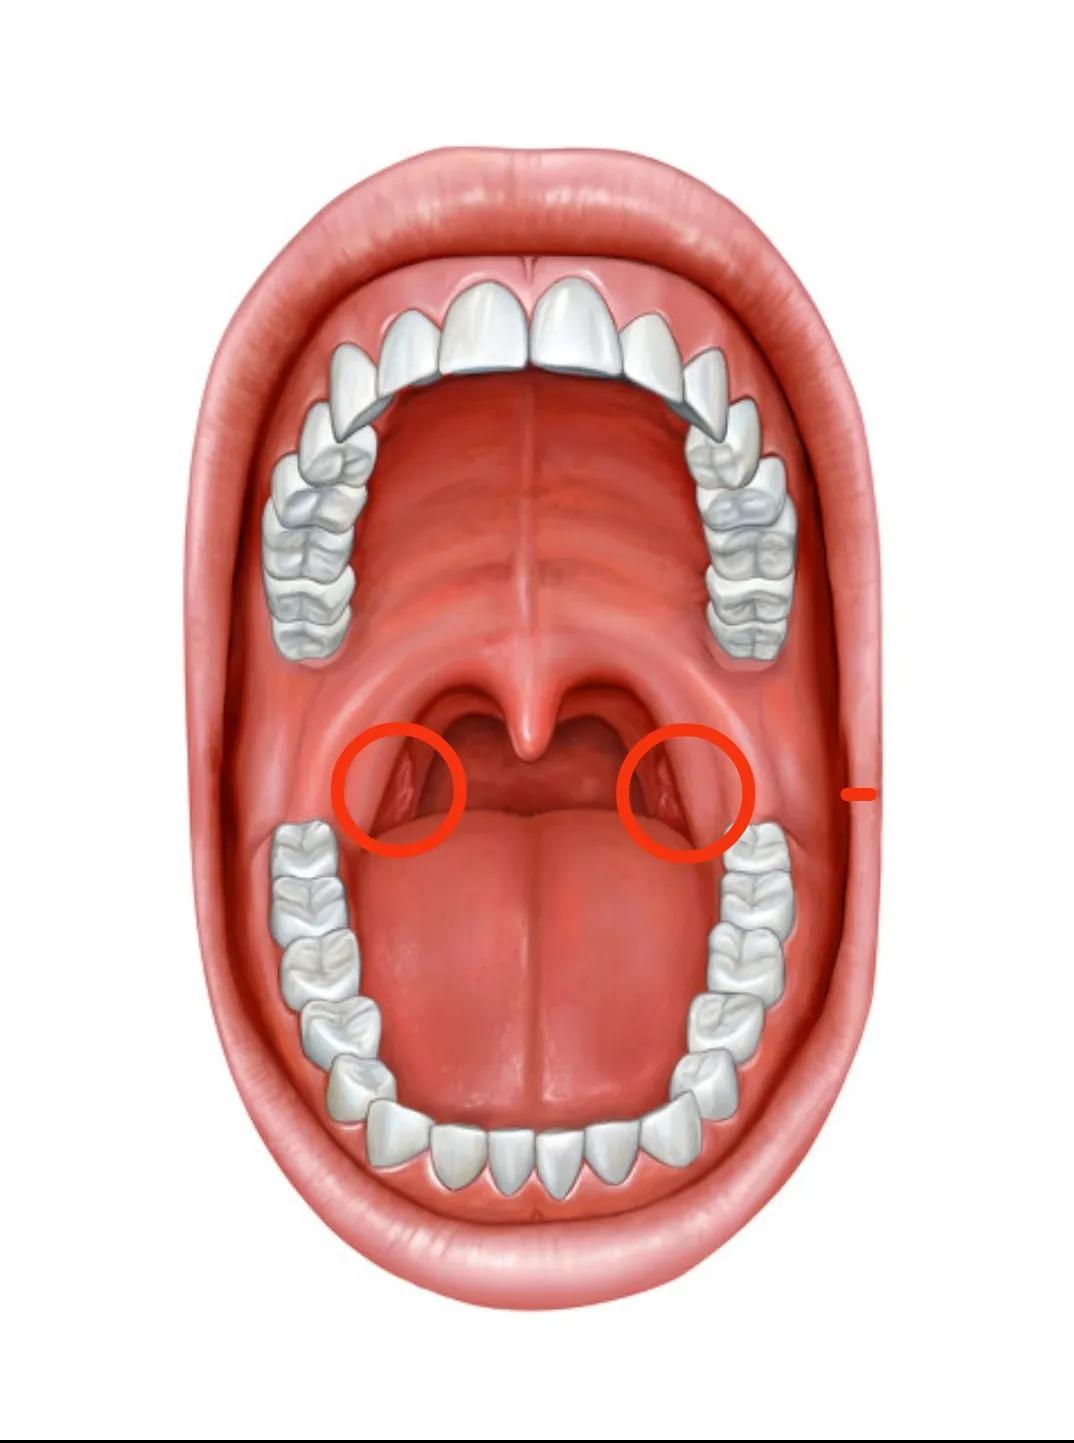 口腔扁桃体示意图扁桃体是位于我们口腔舌后根双侧的扁桃体窝类,看着